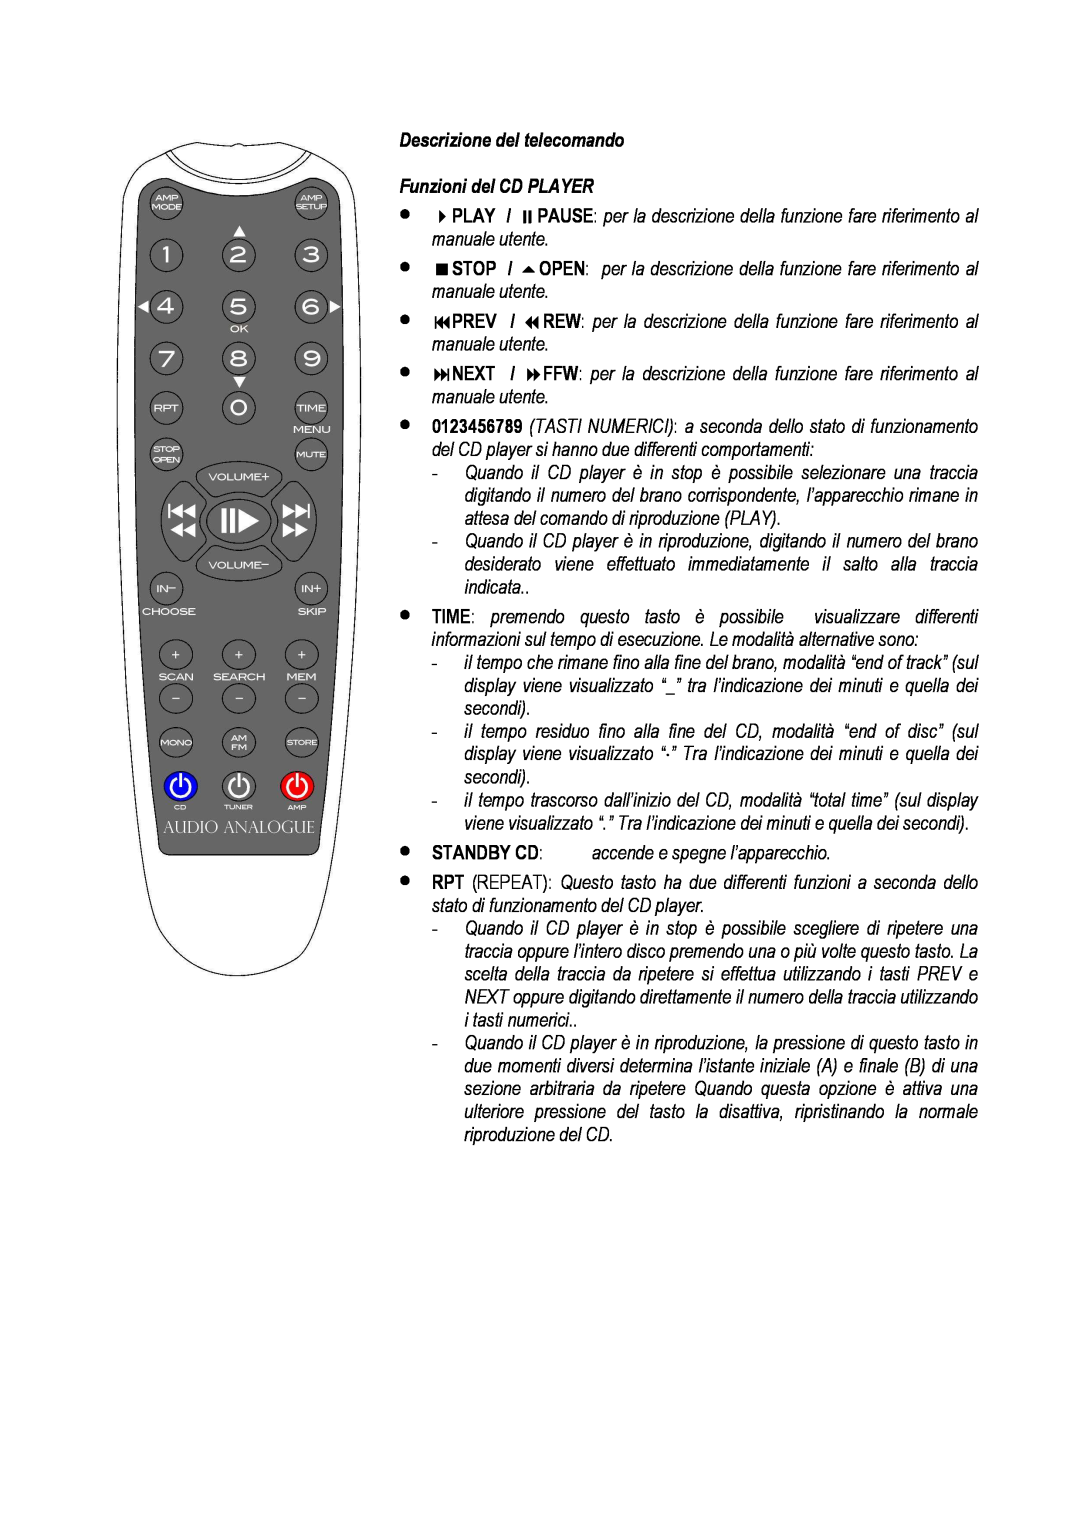 Audio Analogue SRL Rossini 2.0 owner manual Descrizione del telecomando, Funzioni del CD PLAYER 